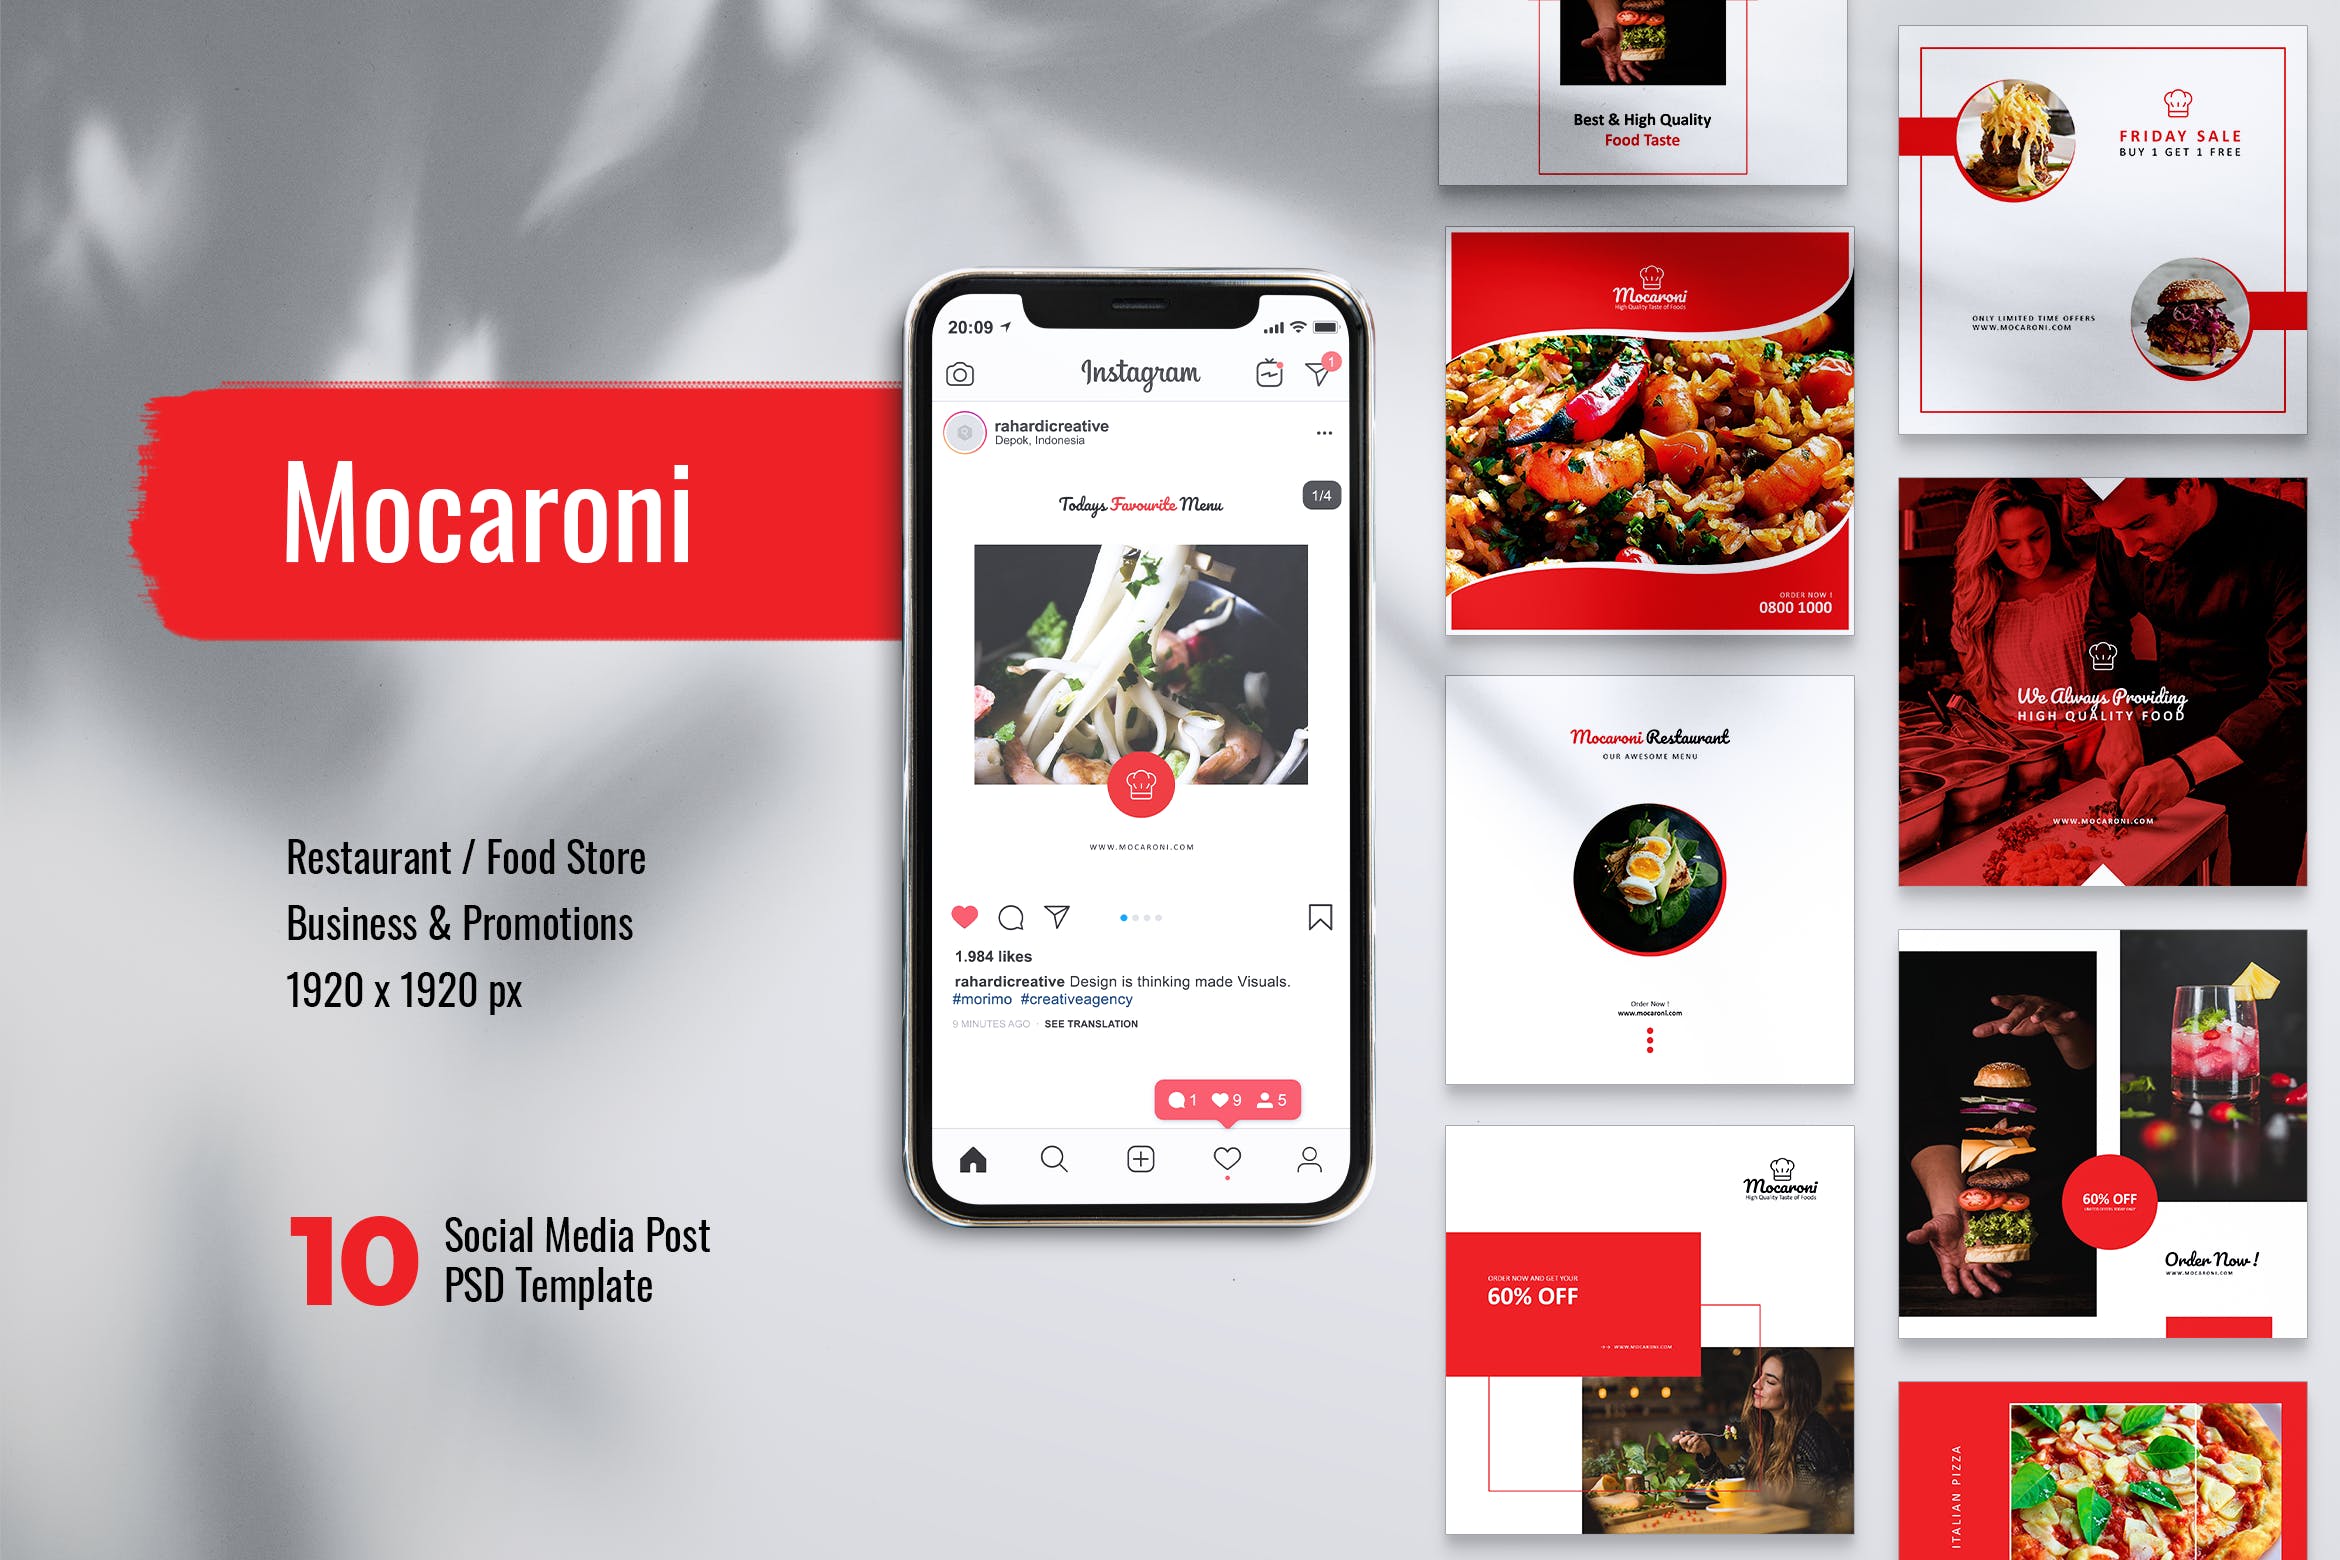 餐馆美食主题Instagram&Facebook社交文章贴图设计PSD模板第一素材精选 MOCARONI Restaurant/Food Instagram & Facebook Post插图